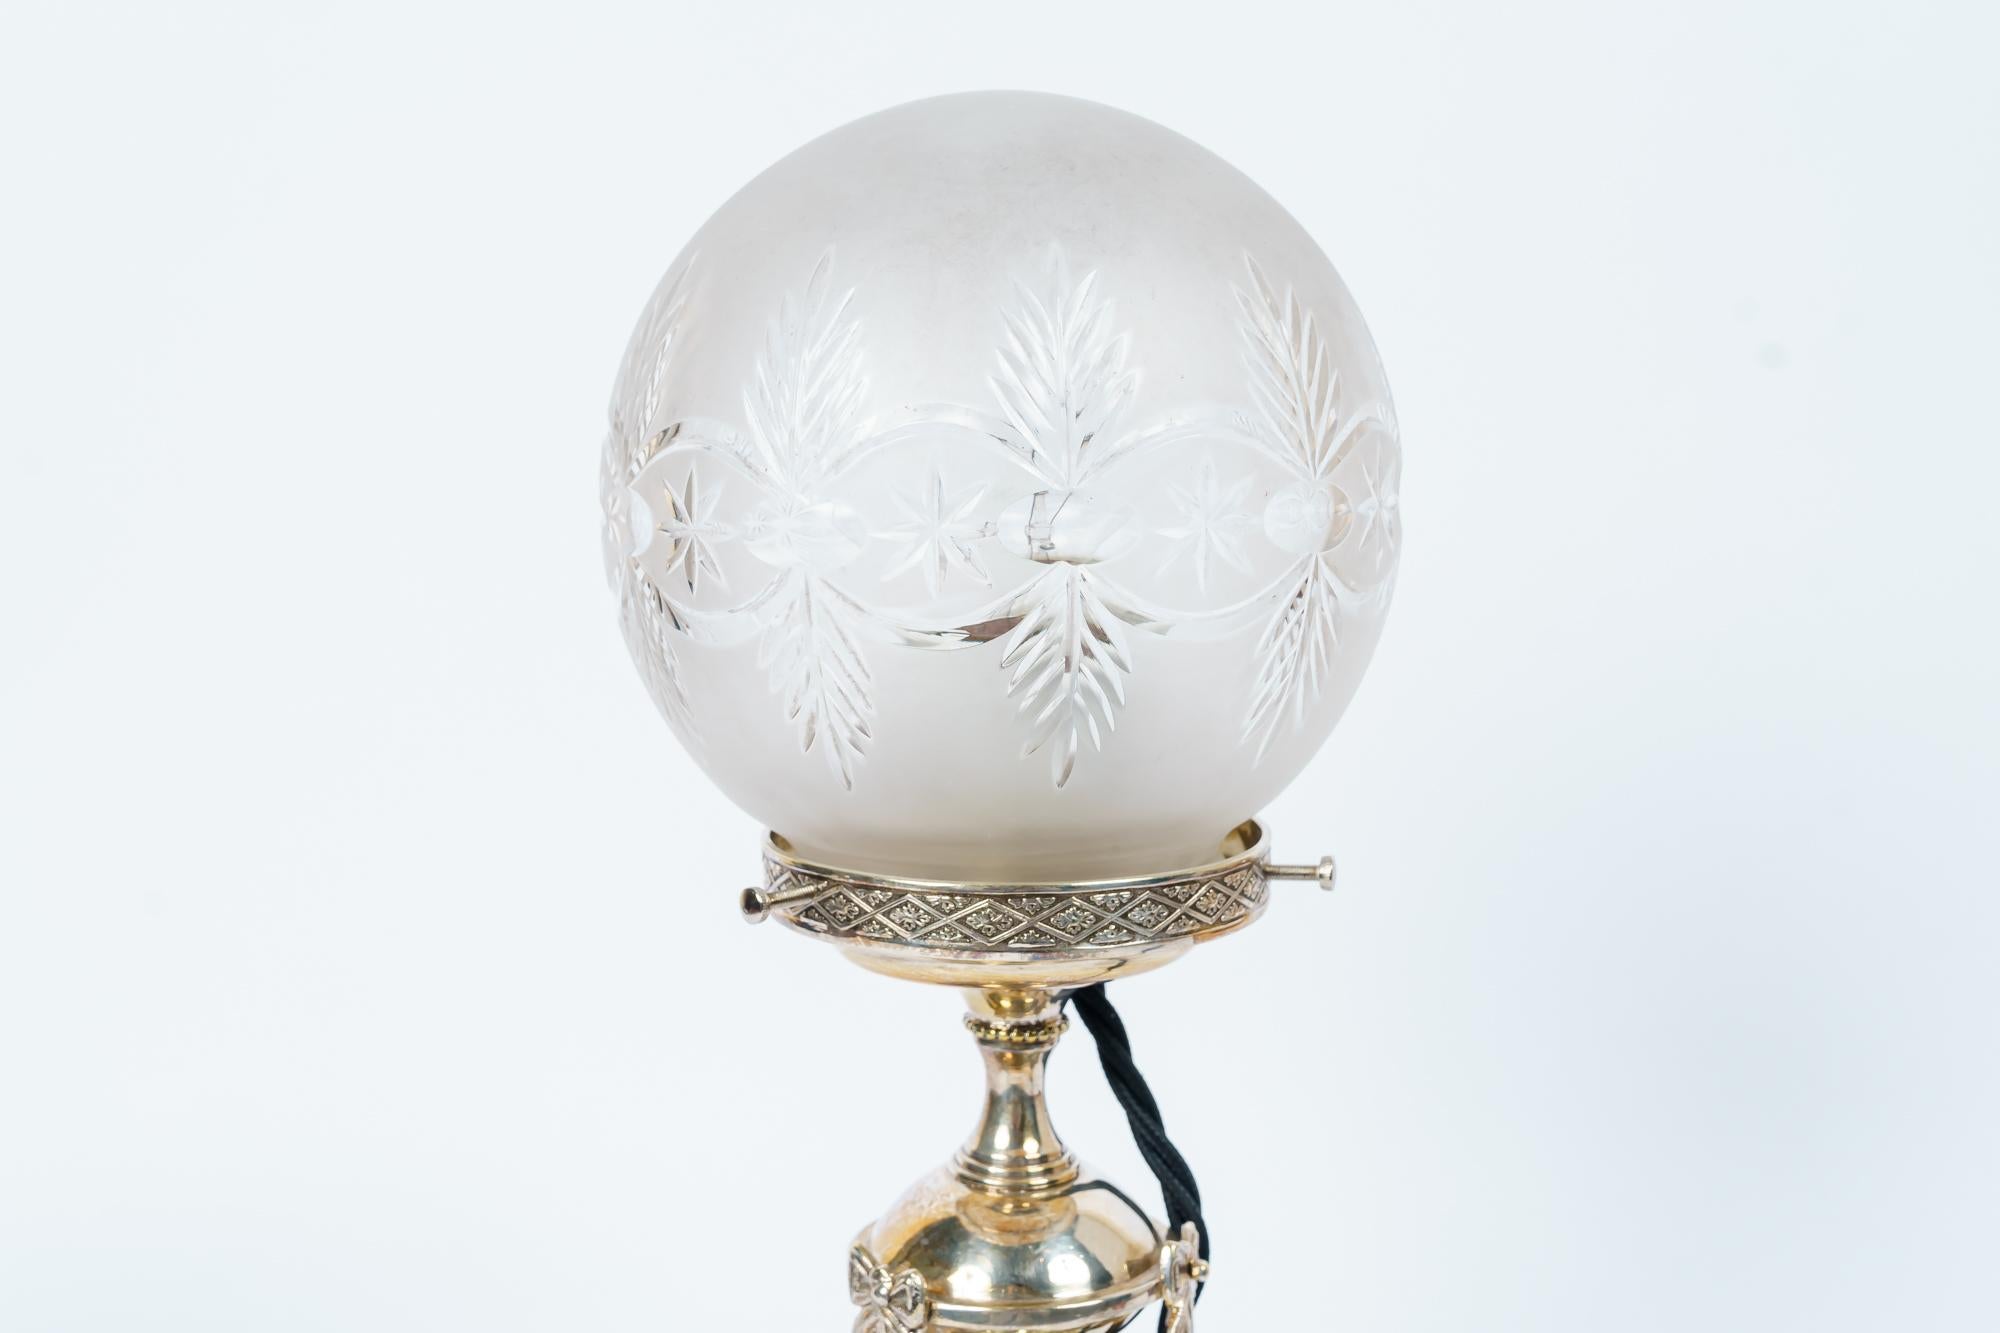 Jugendstil Alpaka Tischlampe Wien um 1908
Poliert
Original geschliffenes Glas.